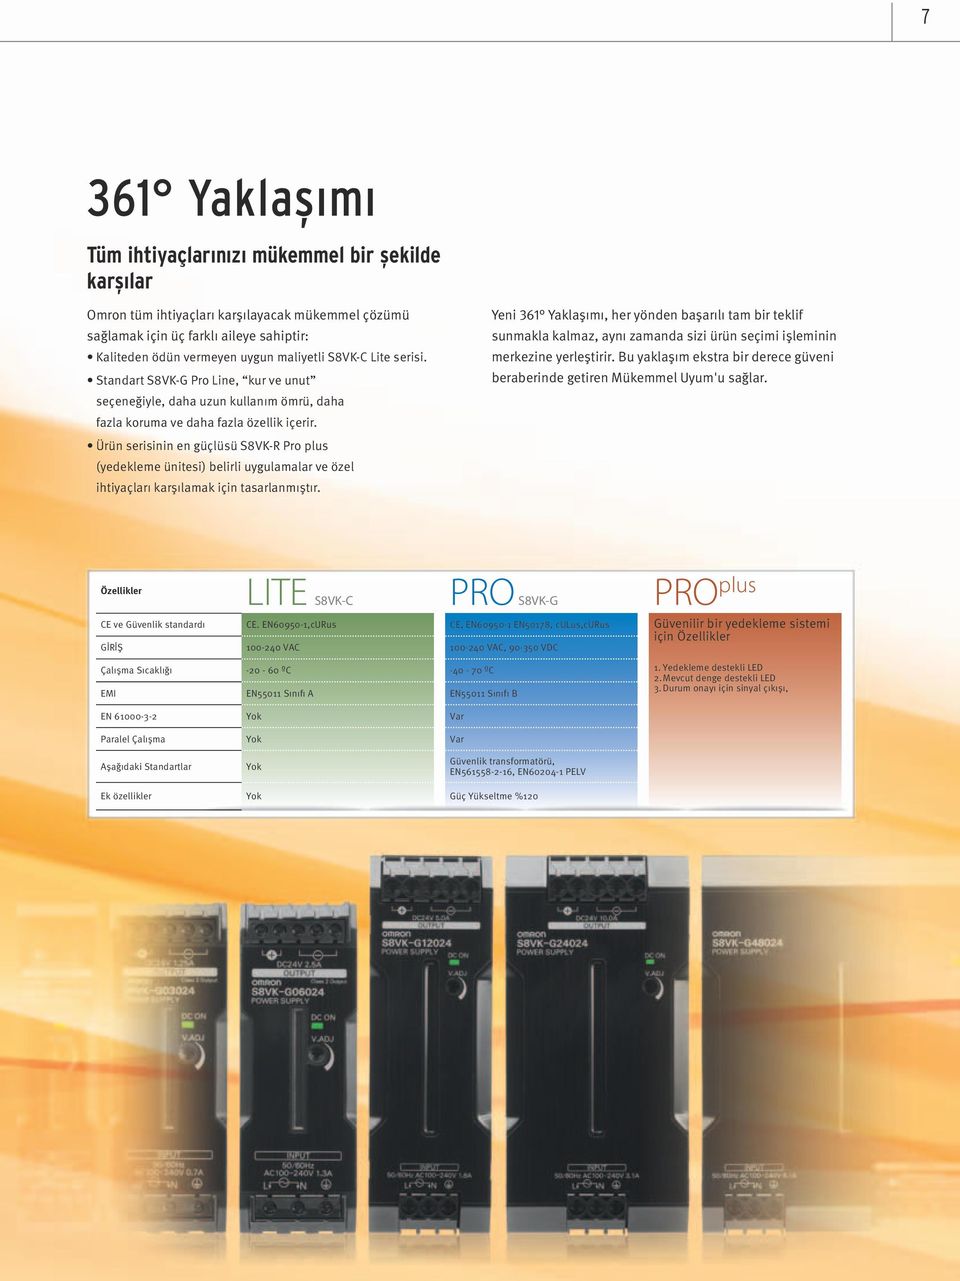 Ürün serisinin en güçlüsü S8VK-R Pro plus (yedekleme ünitesi) belirli uygulamalar ve özel ihtiyaçları karşılamak için tasarlanmıştır.